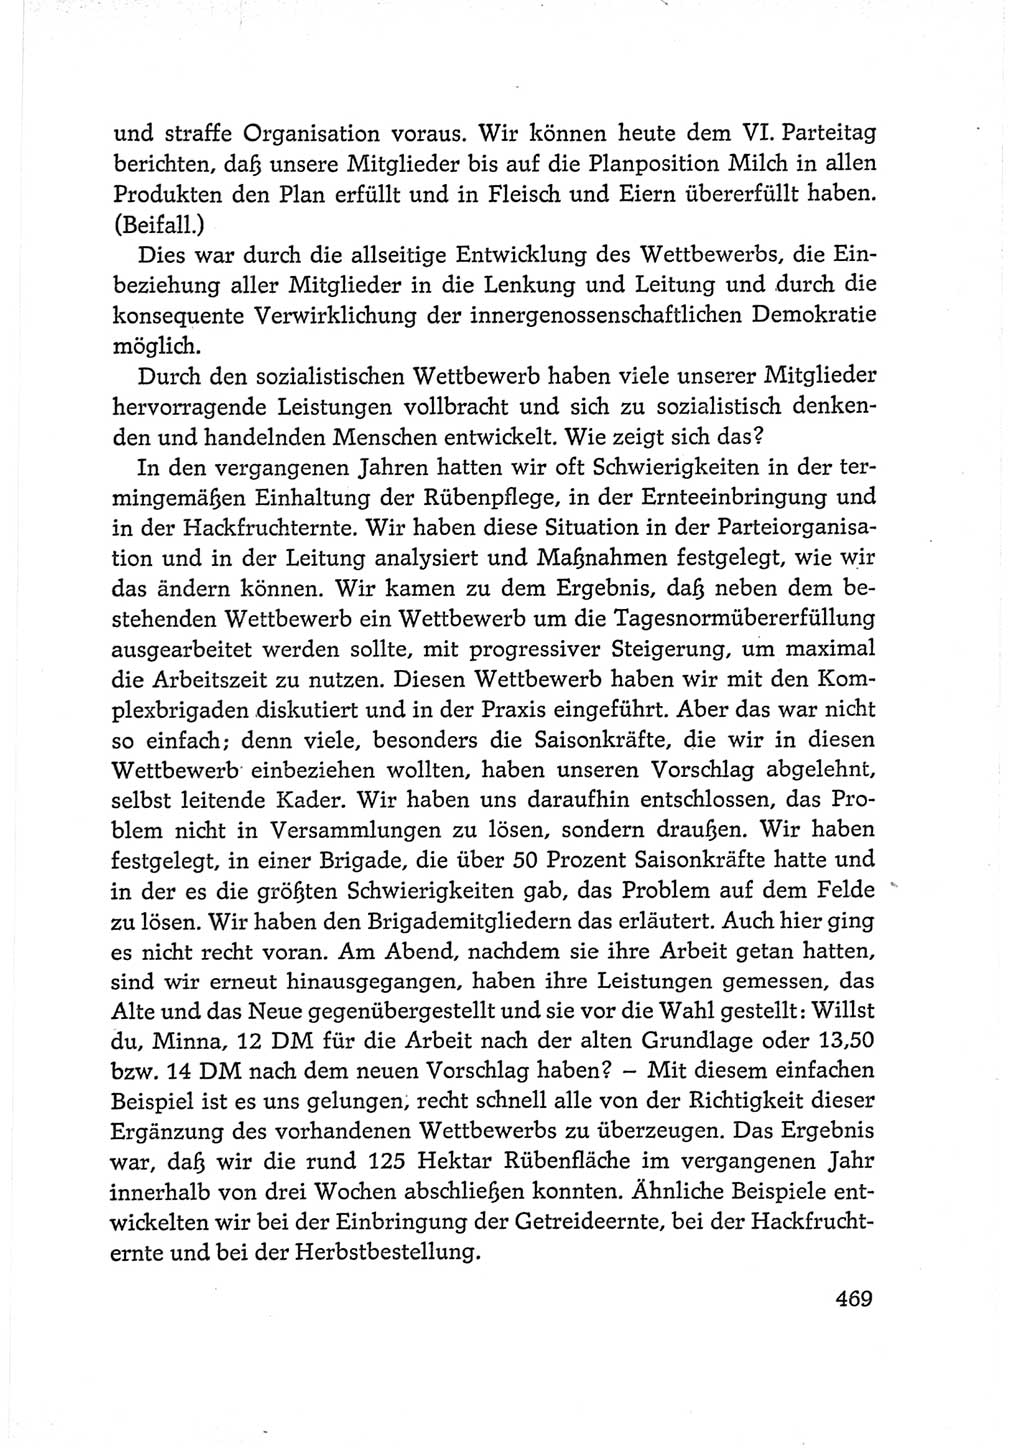 Protokoll der Verhandlungen des Ⅵ. Parteitages der Sozialistischen Einheitspartei Deutschlands (SED) [Deutsche Demokratische Republik (DDR)] 1963, Band Ⅰ, Seite 469 (Prot. Verh. Ⅵ. PT SED DDR 1963, Bd. Ⅰ, S. 469)